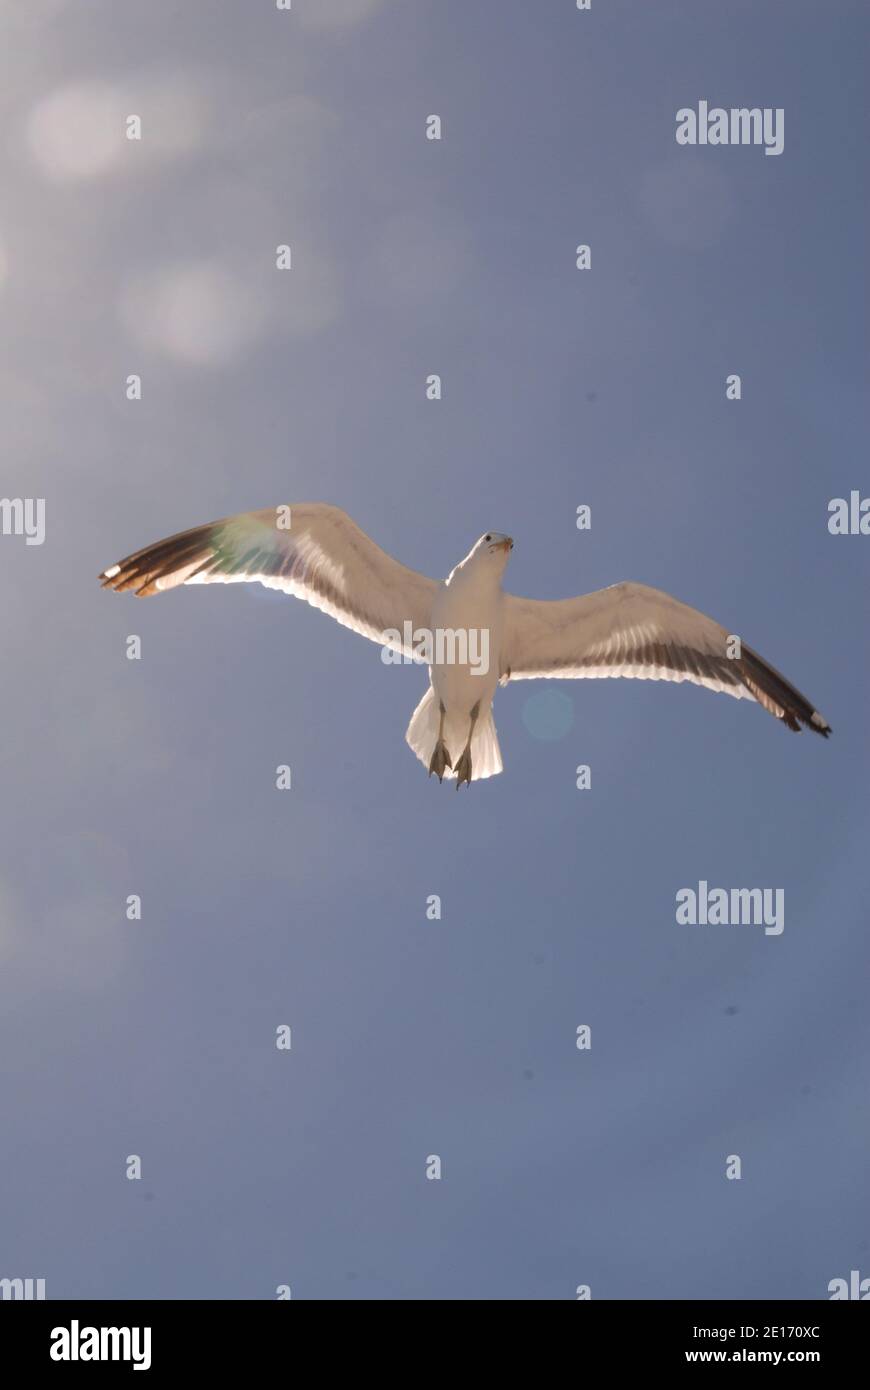 un seagul volant au-dessus de la mer Banque D'Images